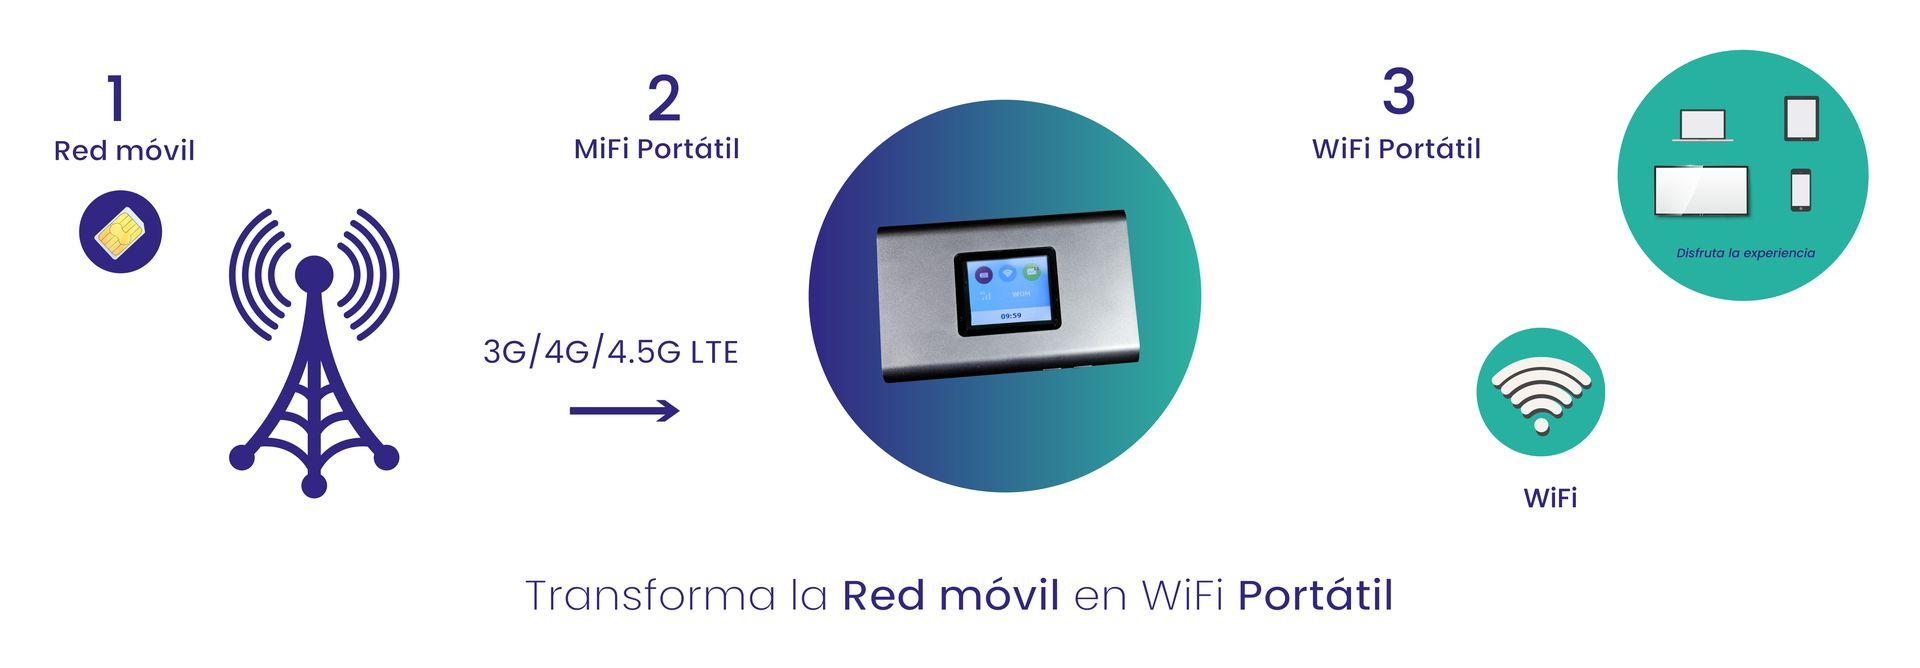 Infografía cómo funciona el WiFi Portátil H3S en 3 sencillos pasos